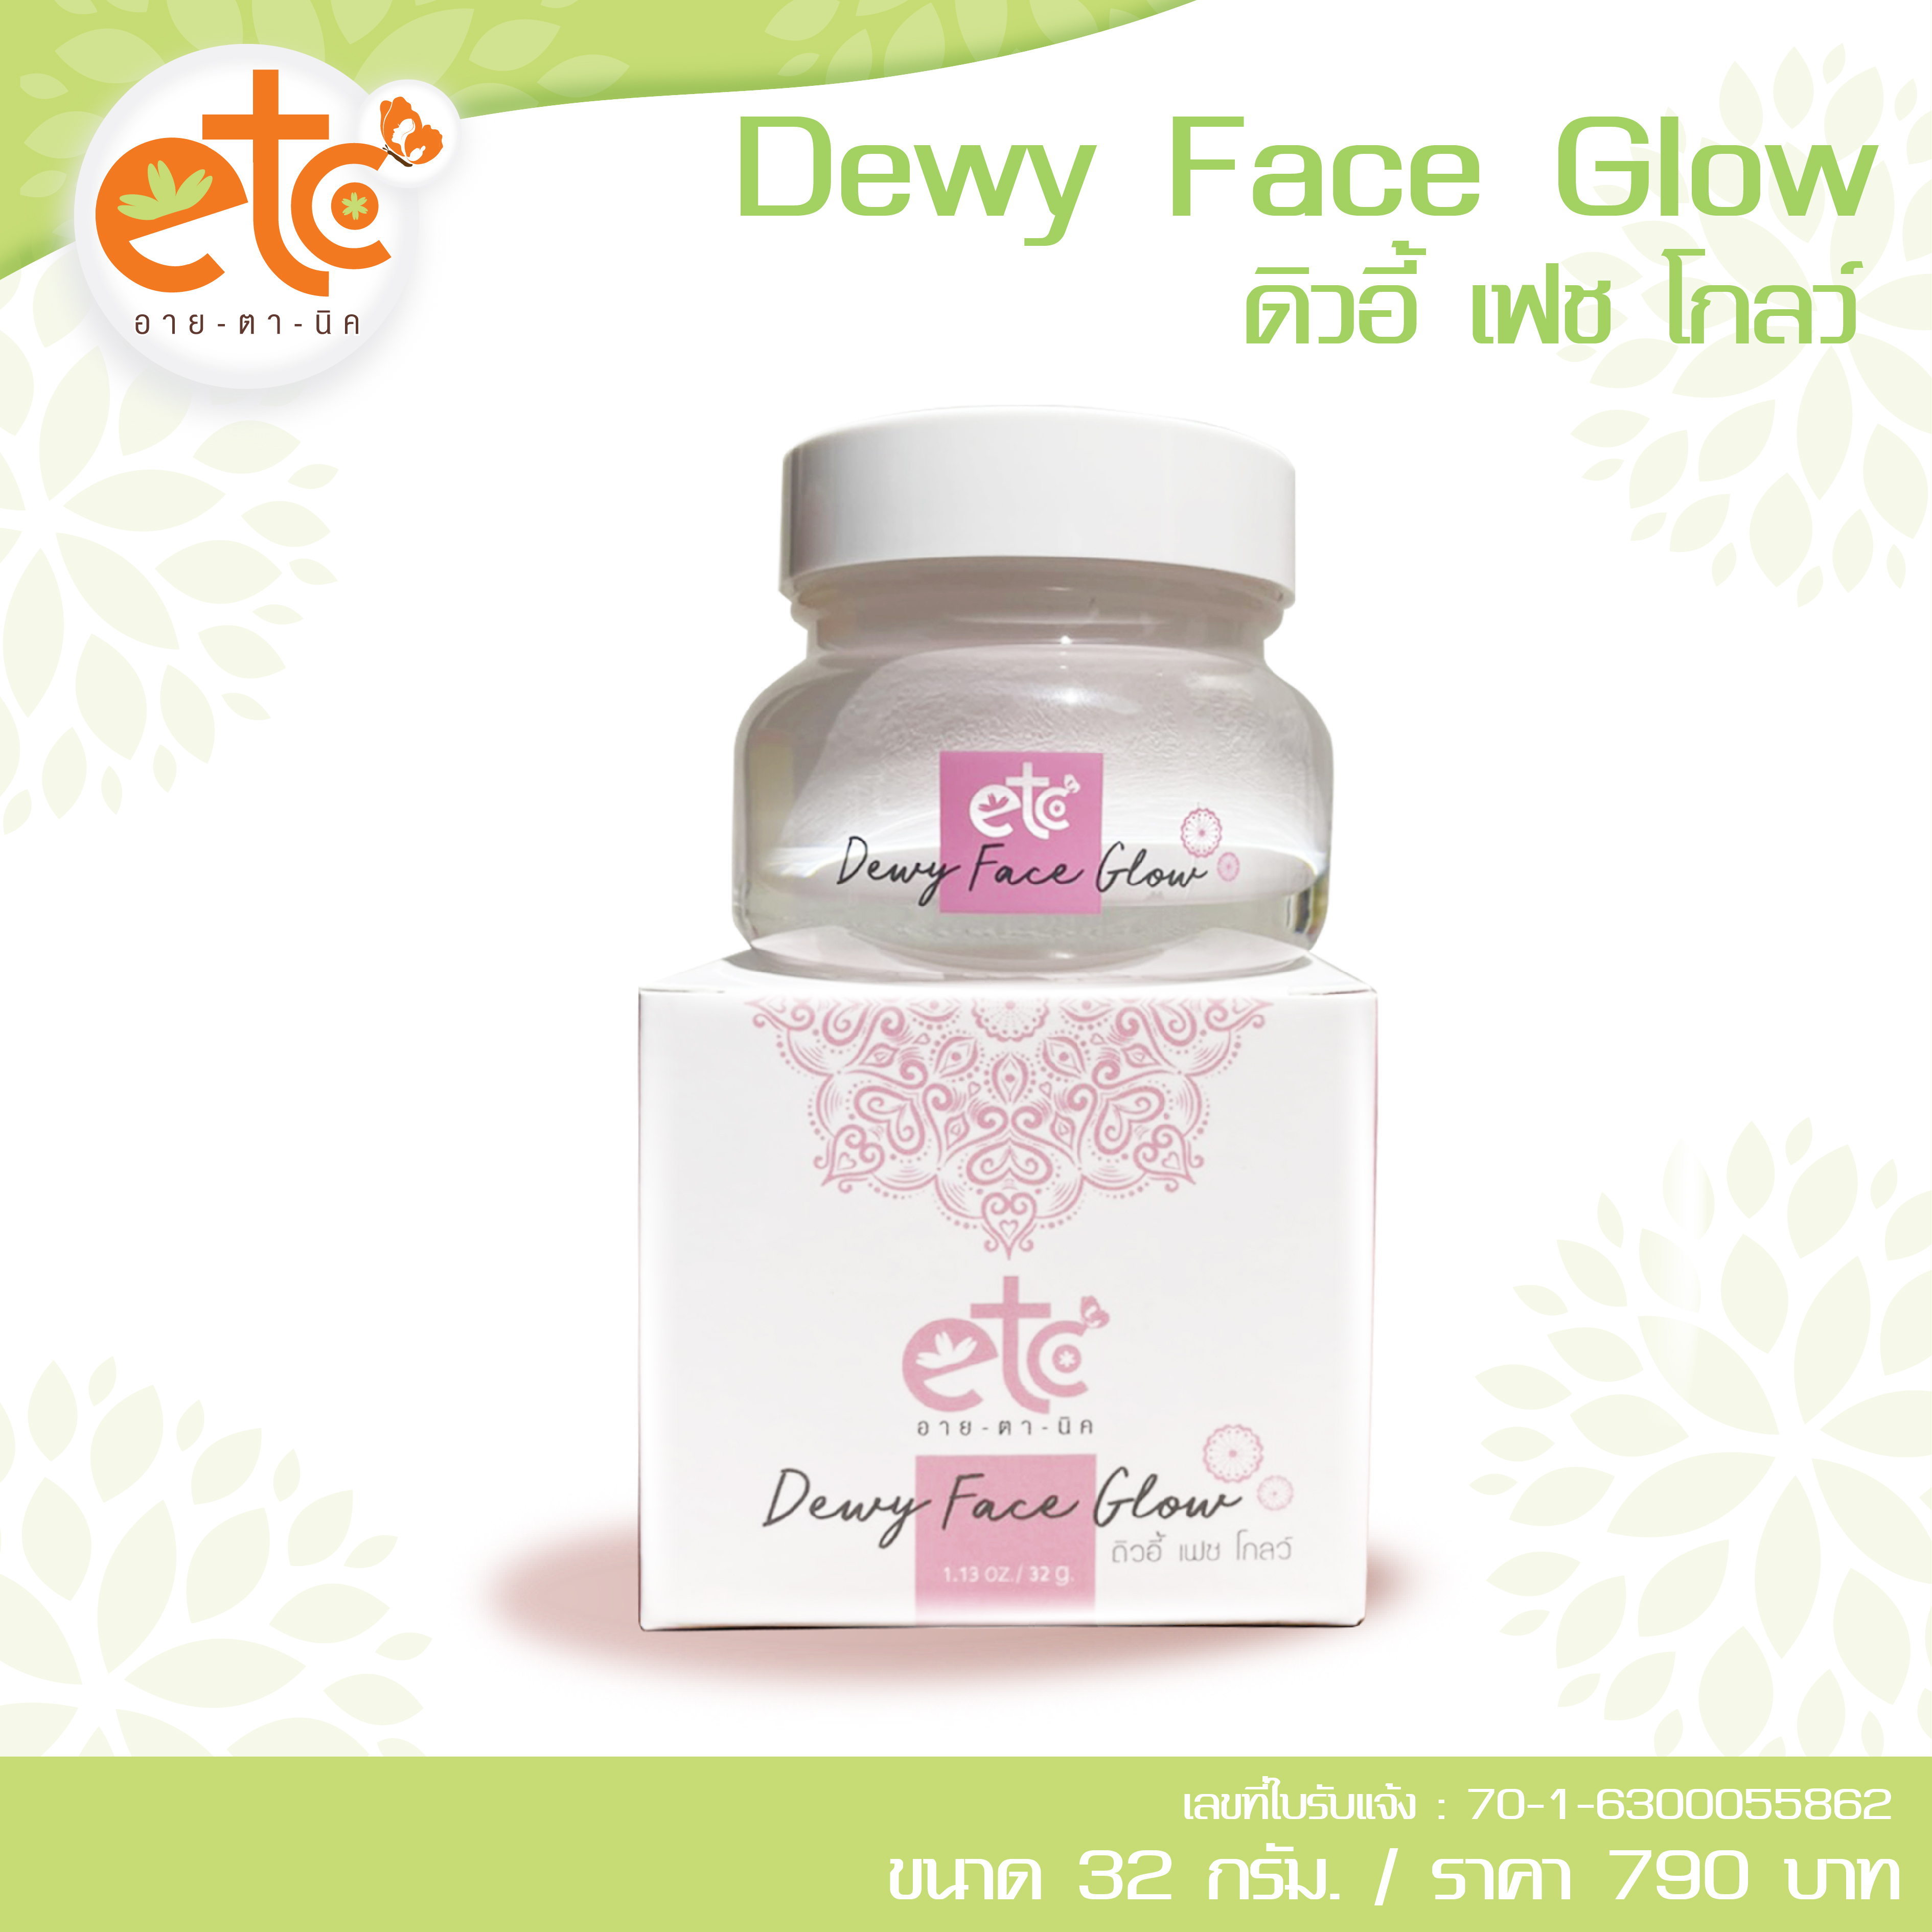 Dewy Face Glow